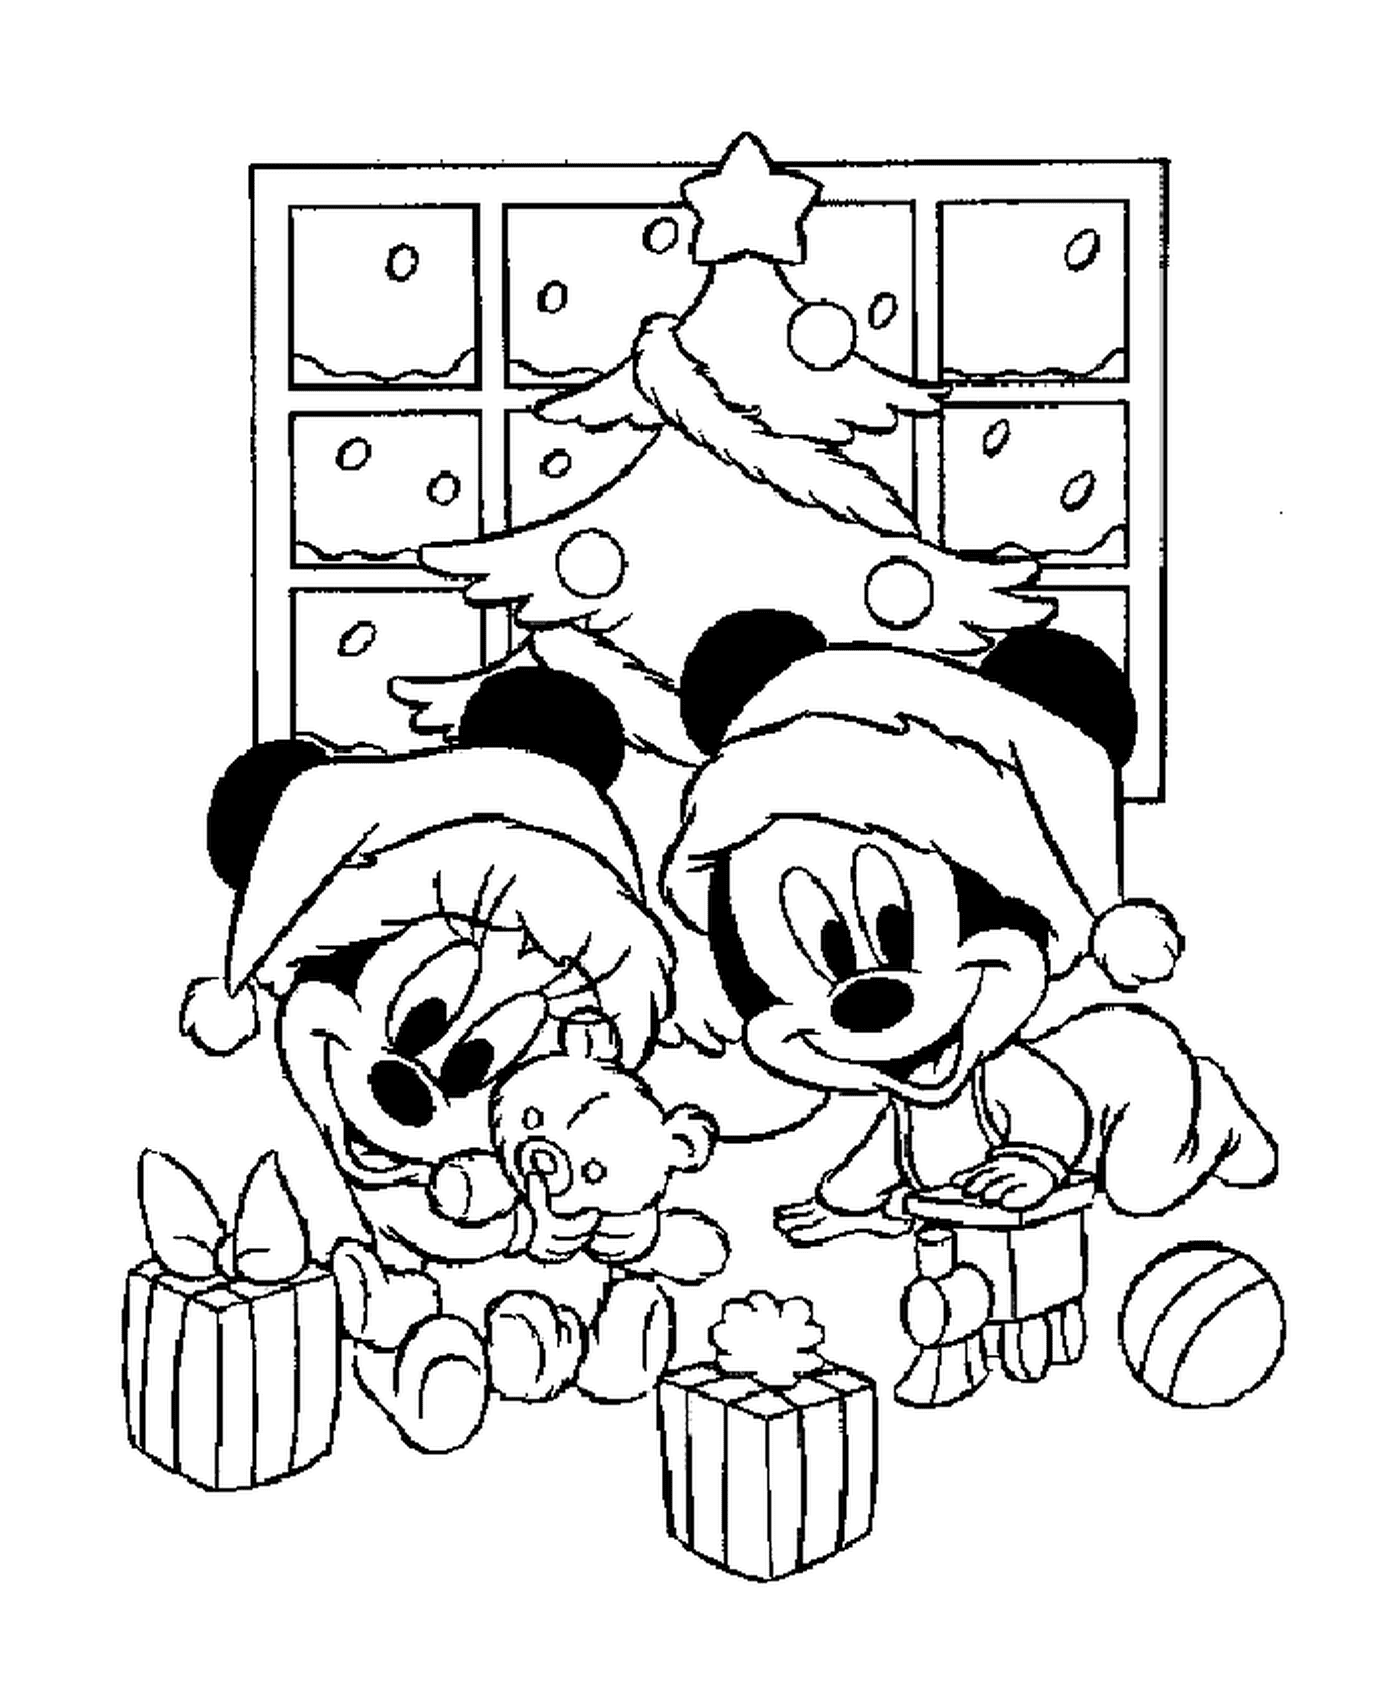   Bébés Mickey et Minnie jouant avec leurs cadeaux devant le sapin 